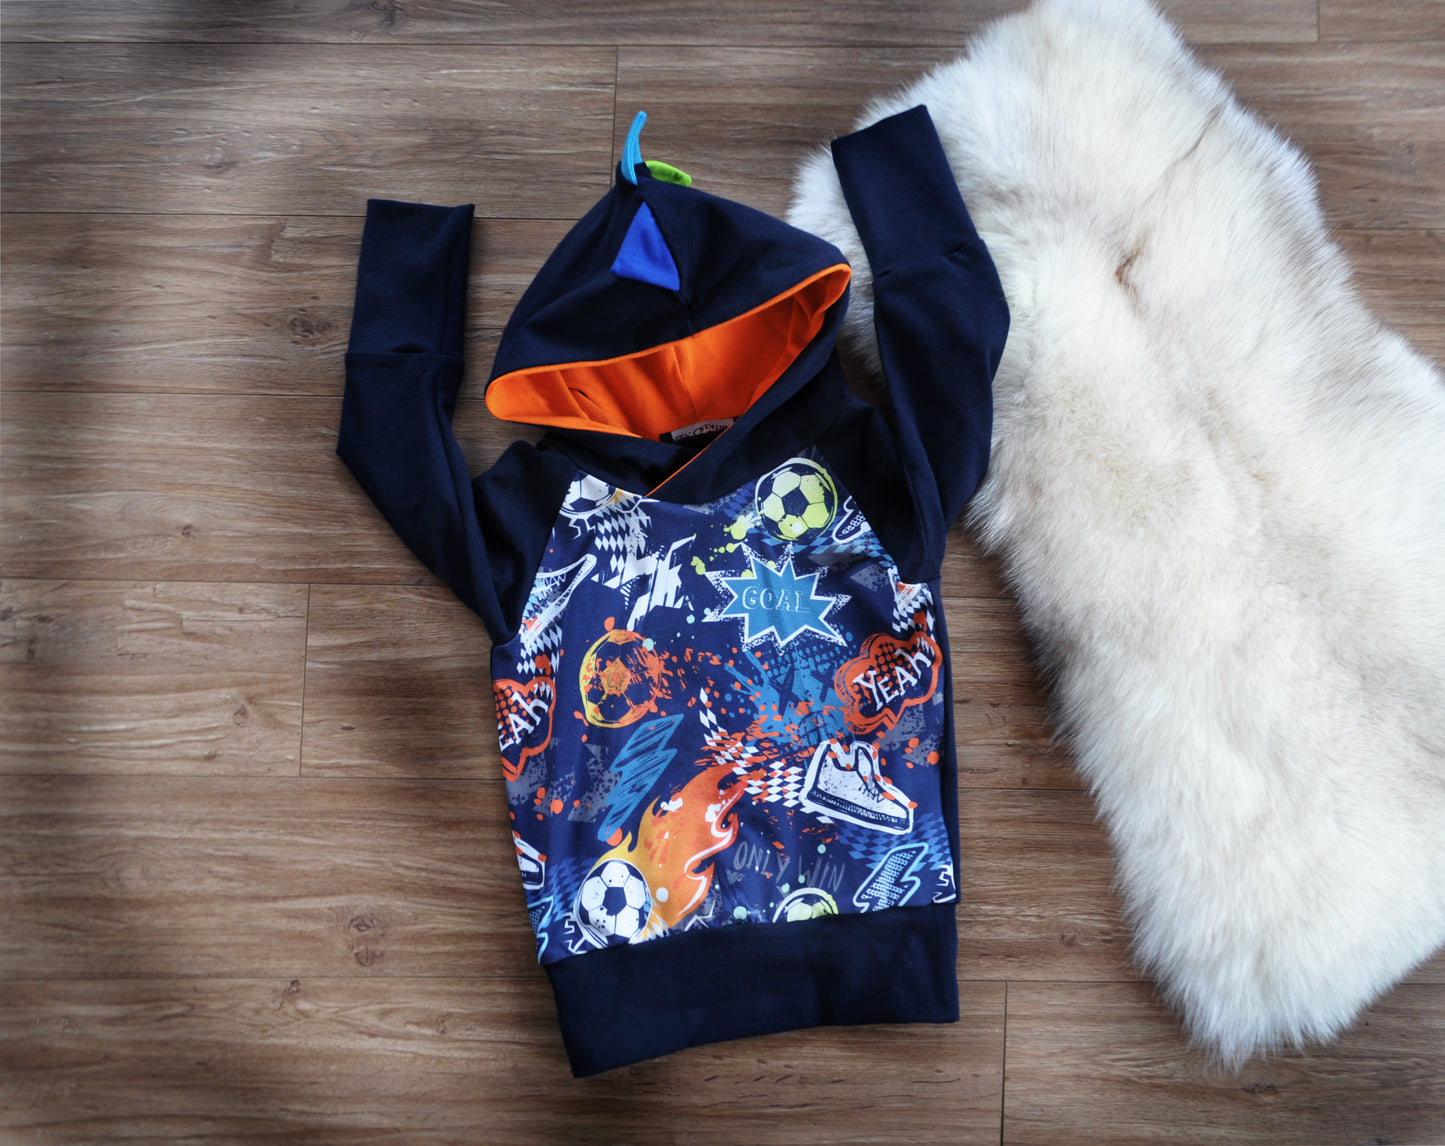 Hoodie ou sweater évolutif avec imprimé soccer multicolore avec piques au dos, ÉTÉ 2021 GARCON